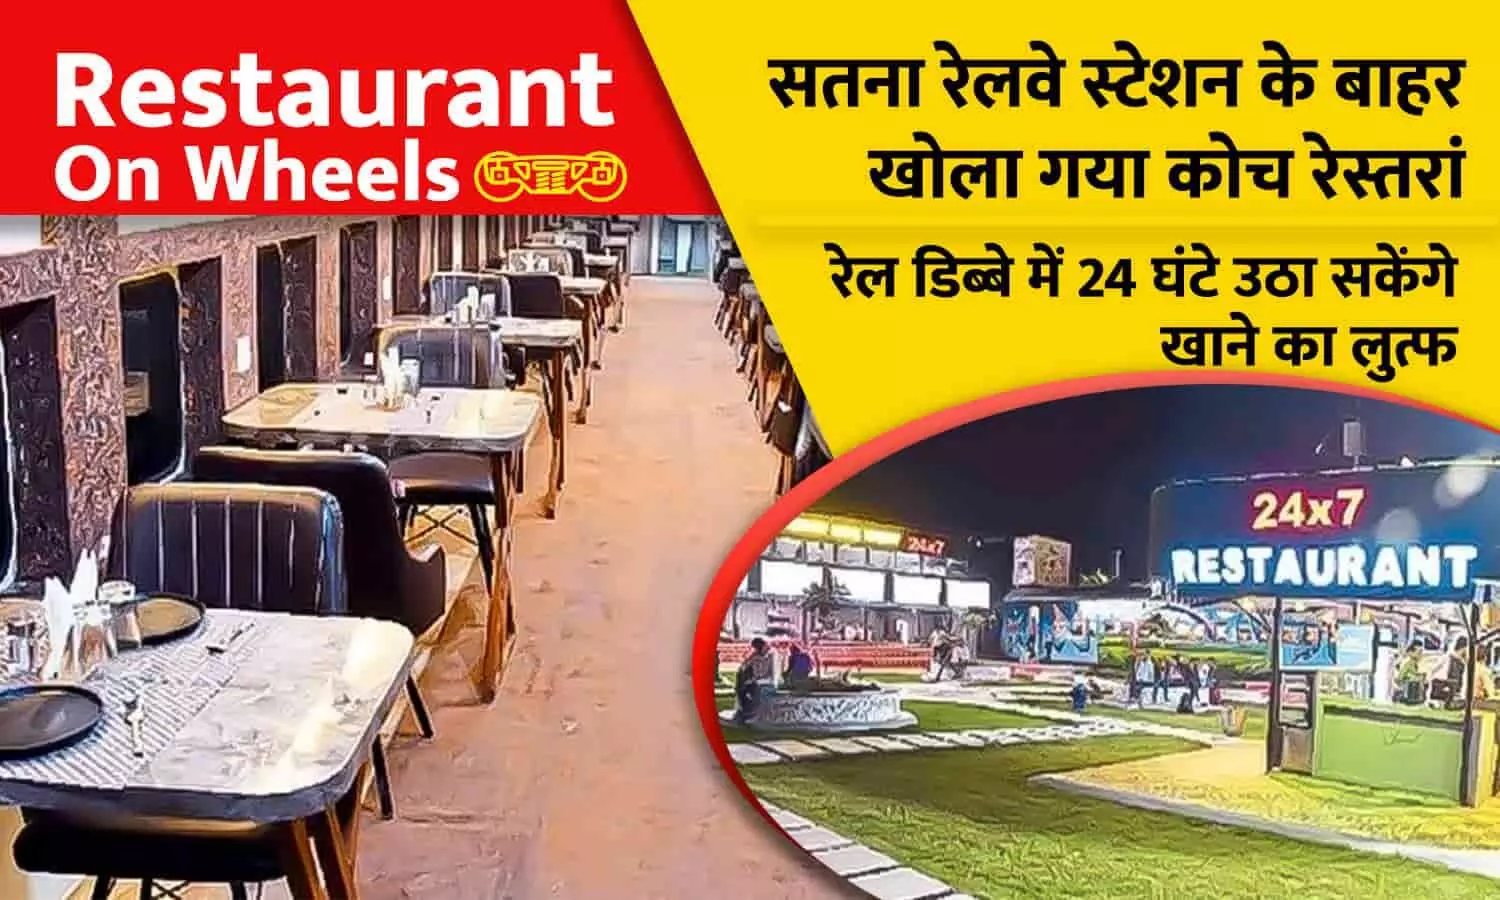 Restaurant On Wheels: सतना रेलवे स्टेशन के बाहर खोला गया कोच रेस्तरां, रेल डिब्बे में 24 घंटे उठा सकेंगे खाने का लुत्फ